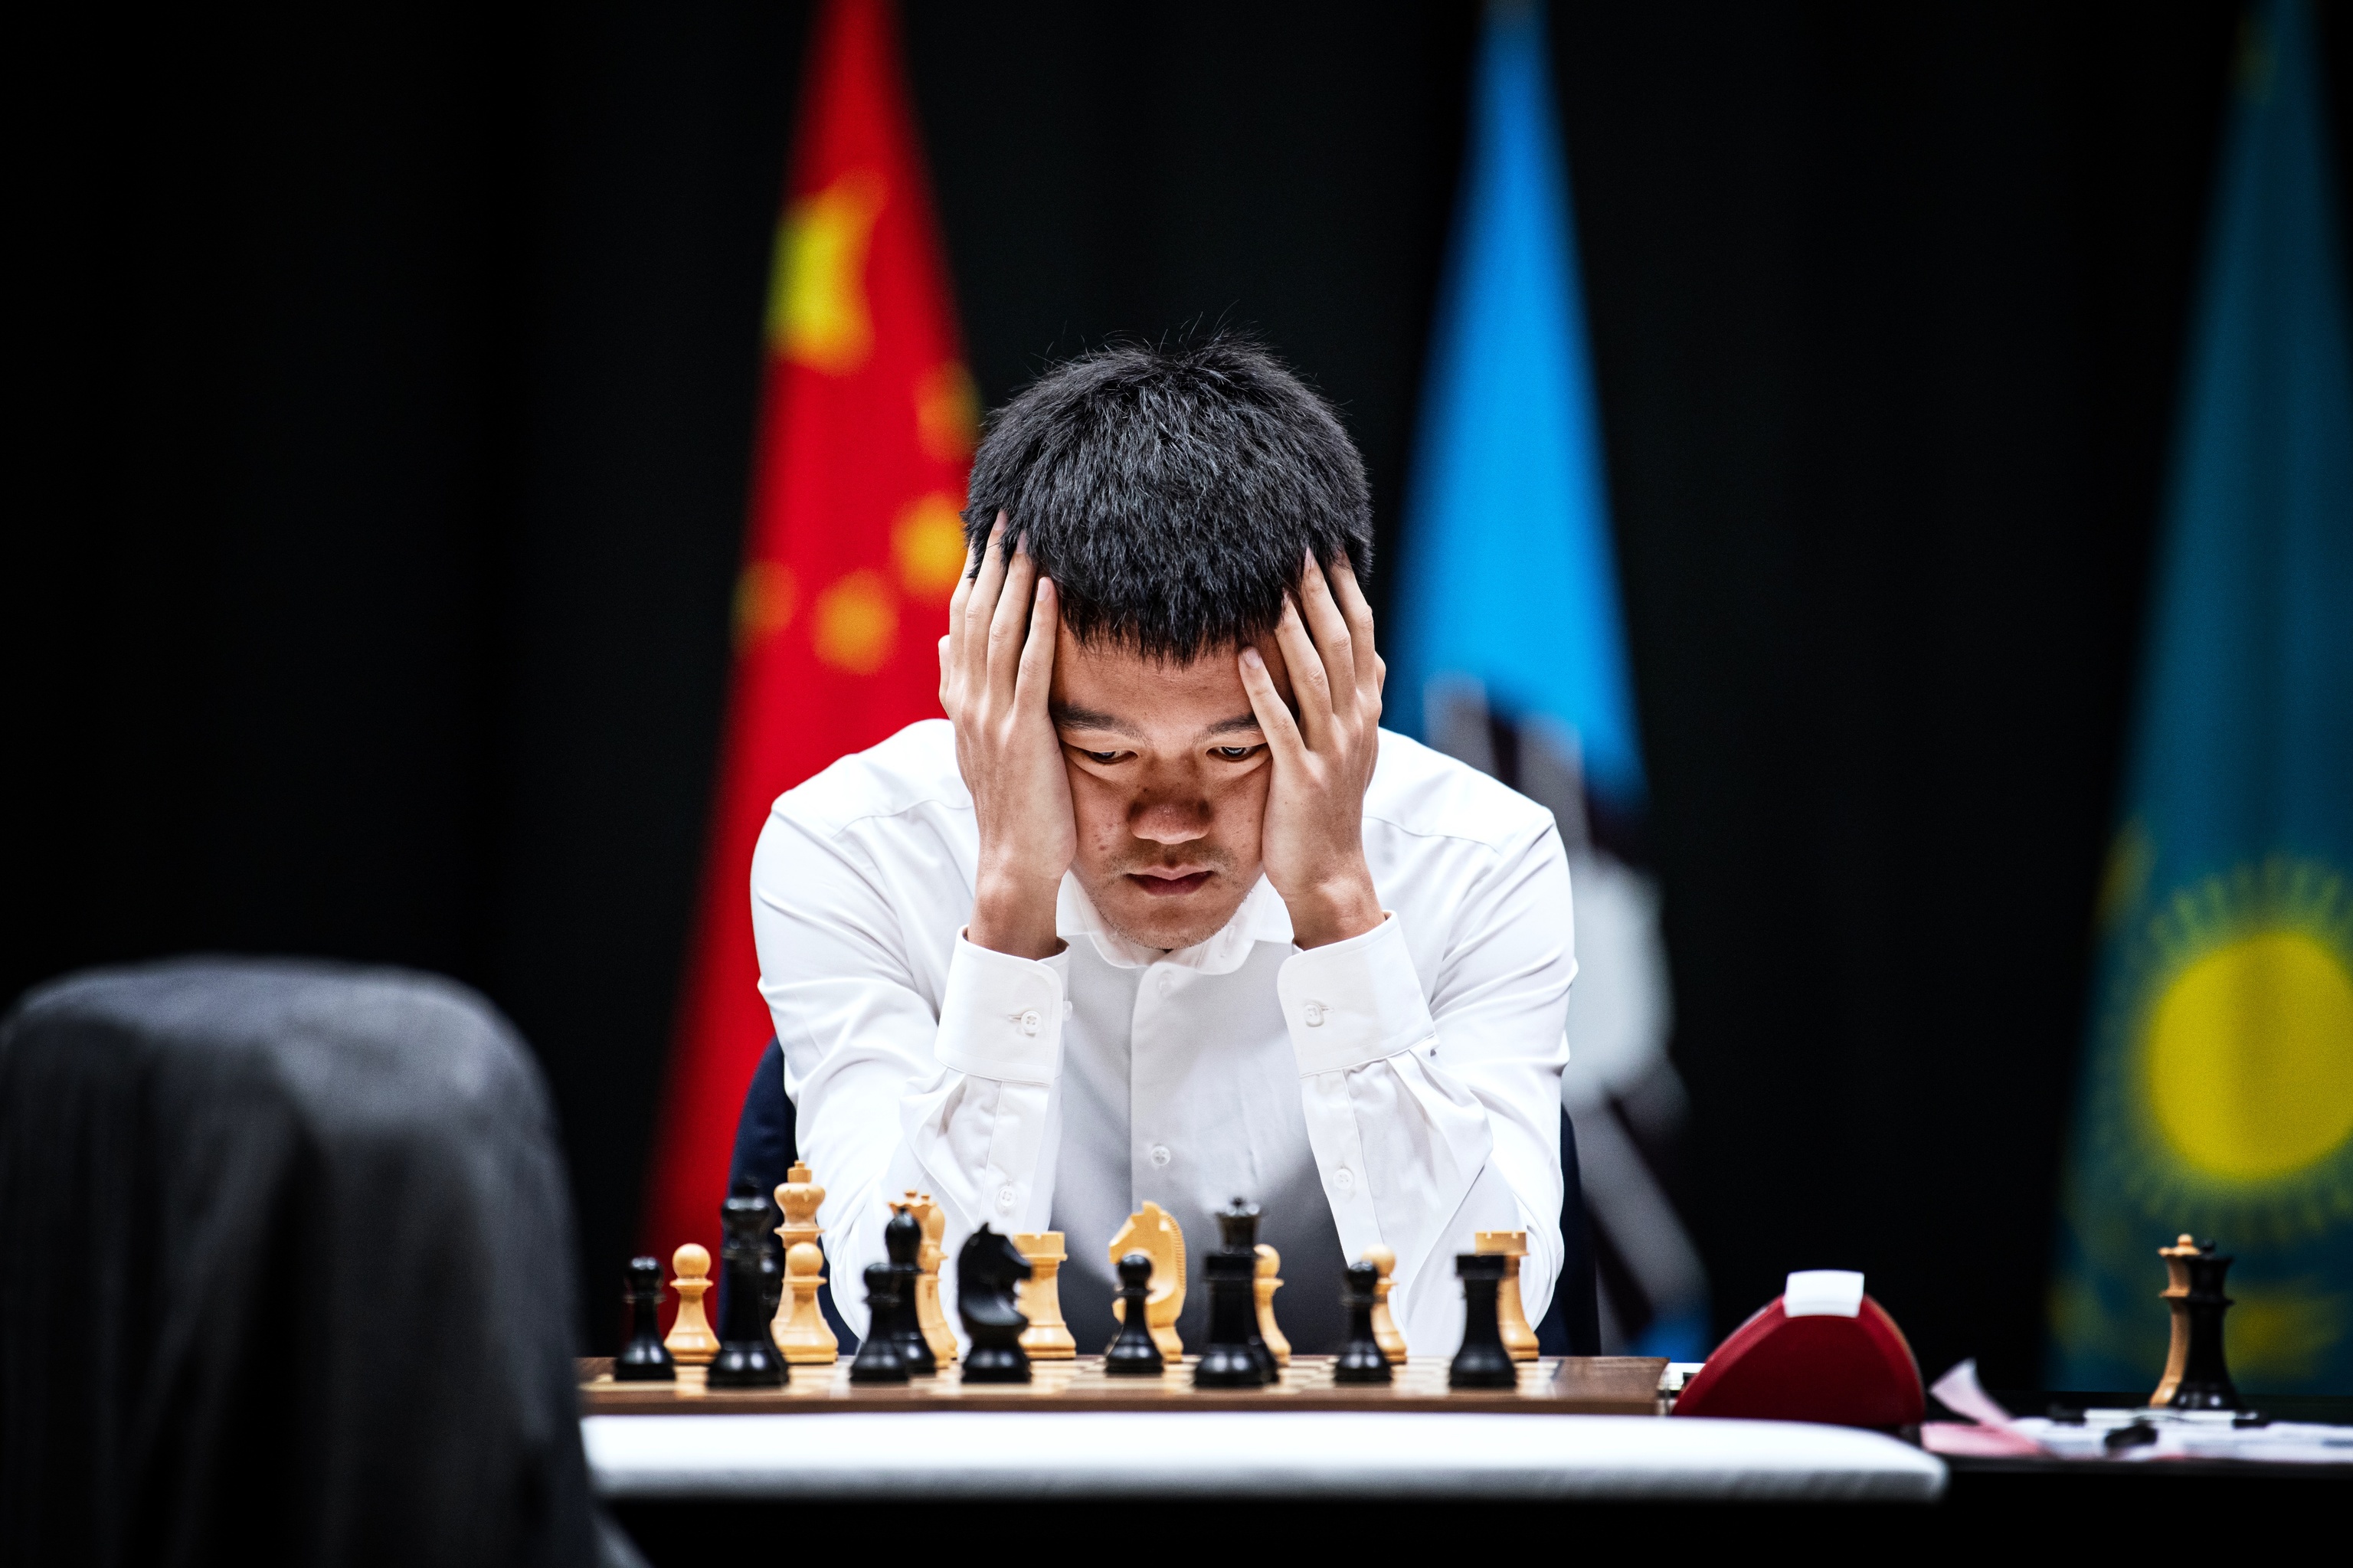 Ding Liren, el rey del ajedrez al que el COVID recluyó en Madrid